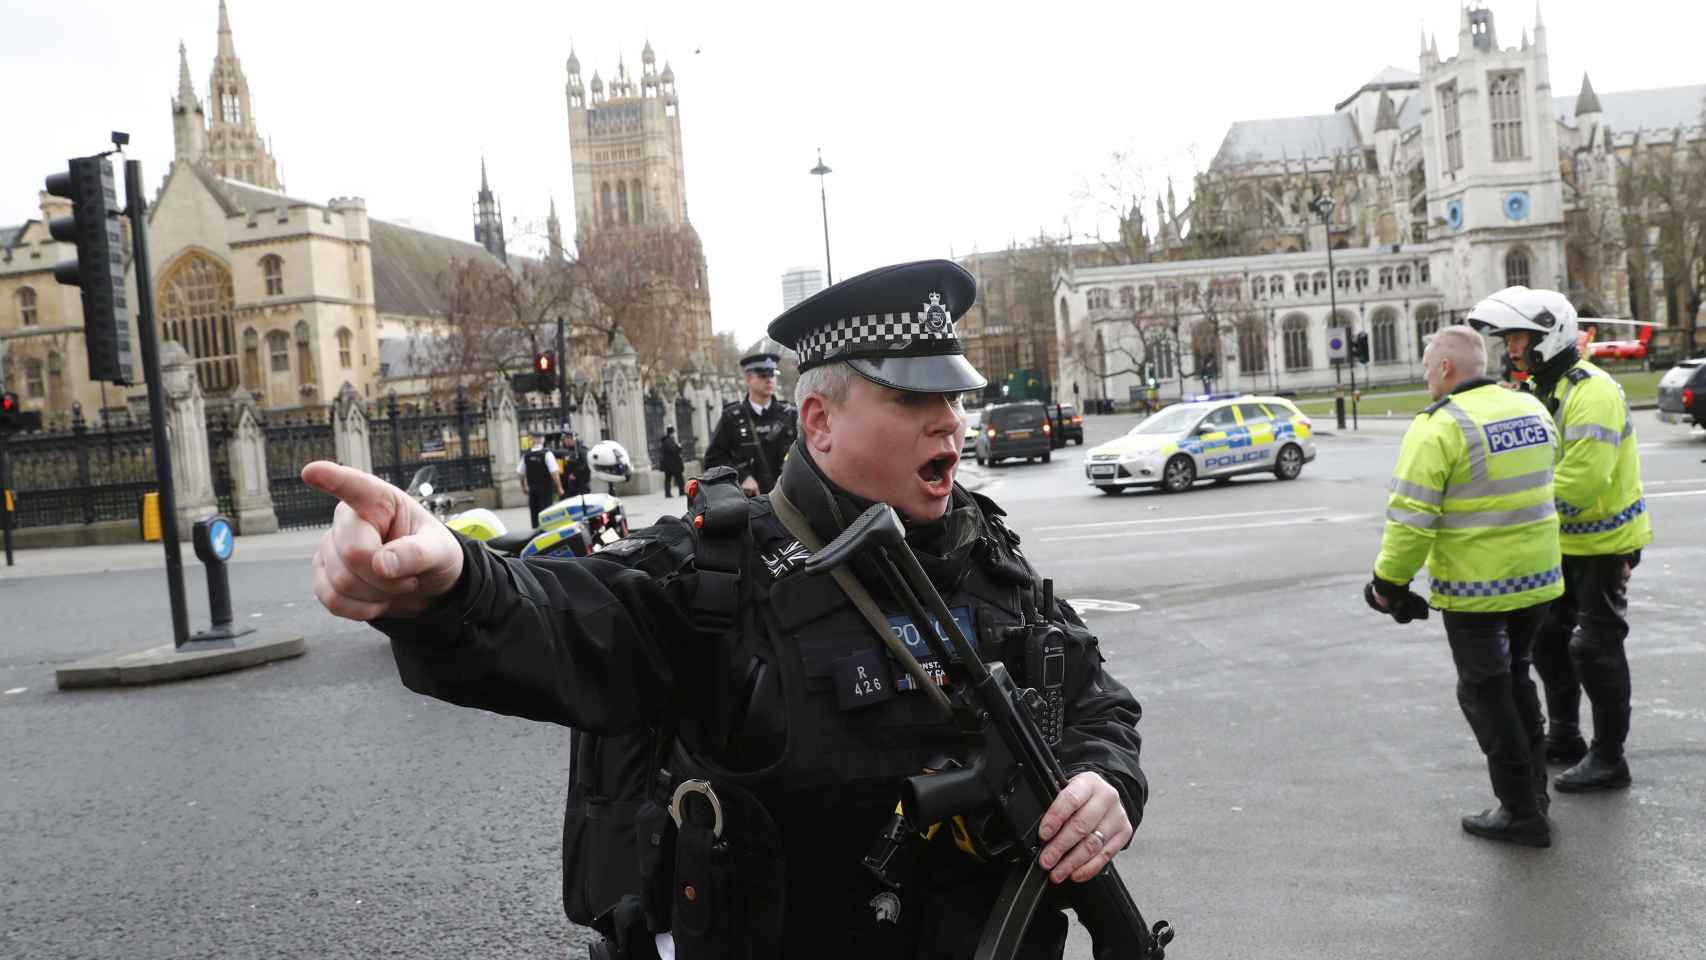 Scotland Yard y la Policía de Londres tratan el ataque como un atentado terrorista